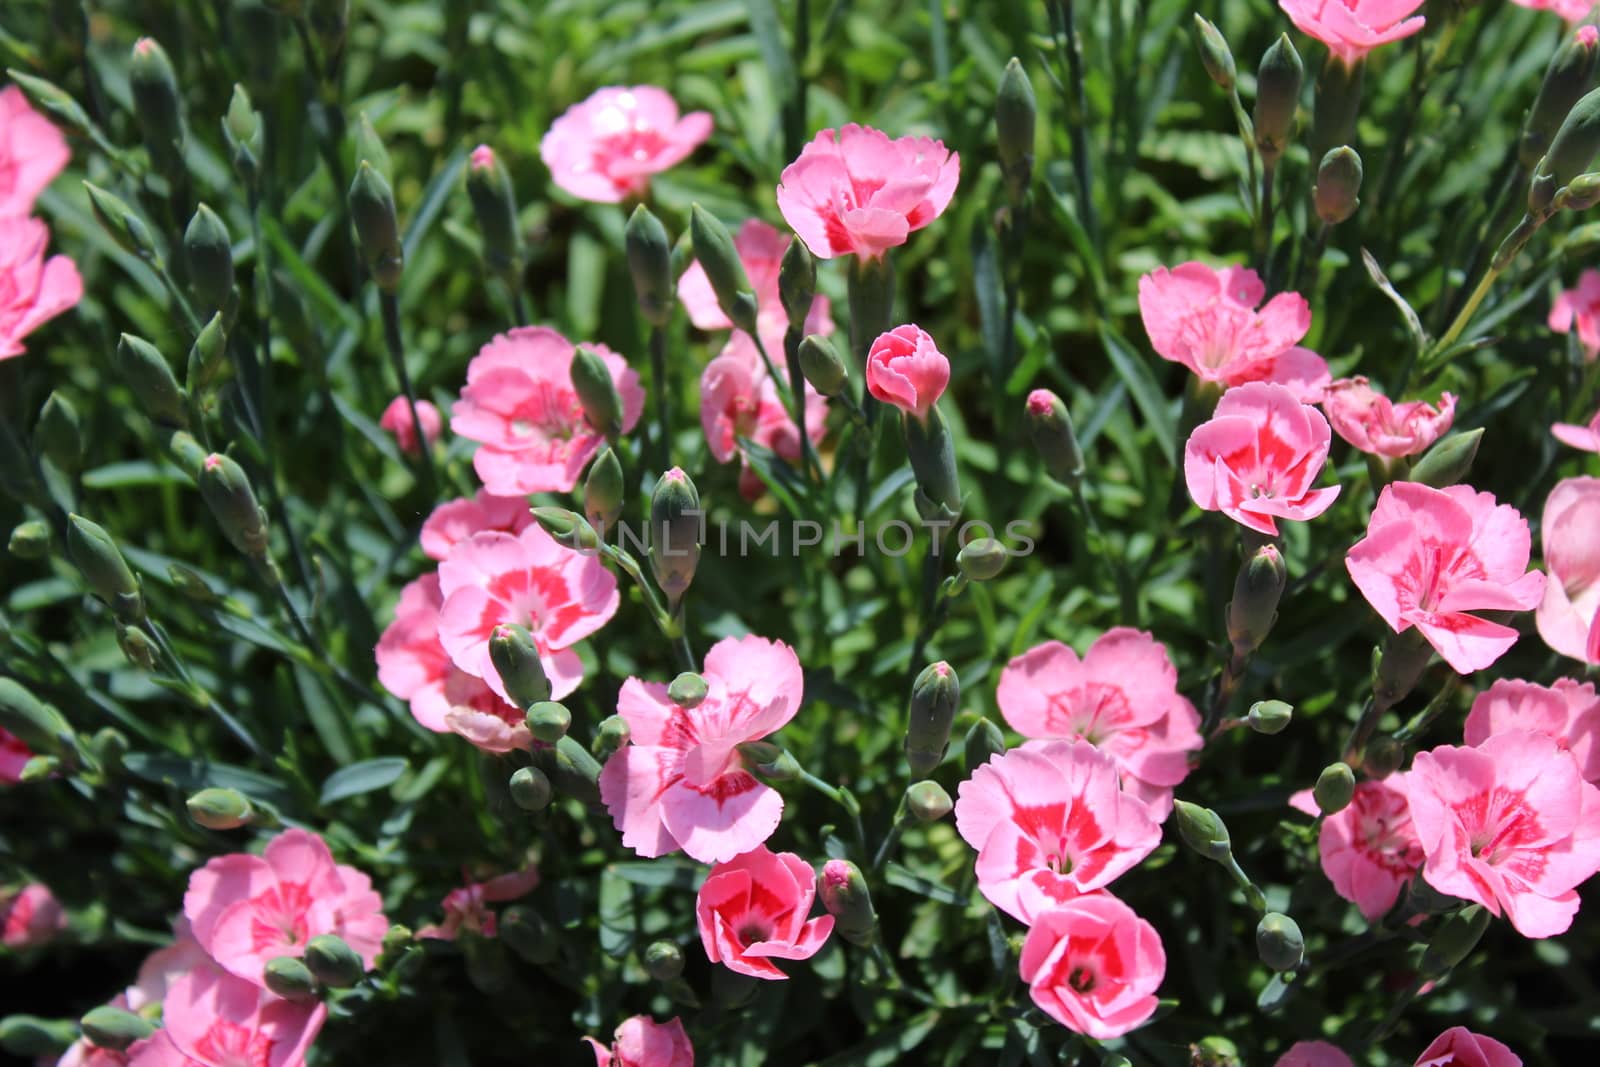 pink carnation in the garden by martina_unbehauen